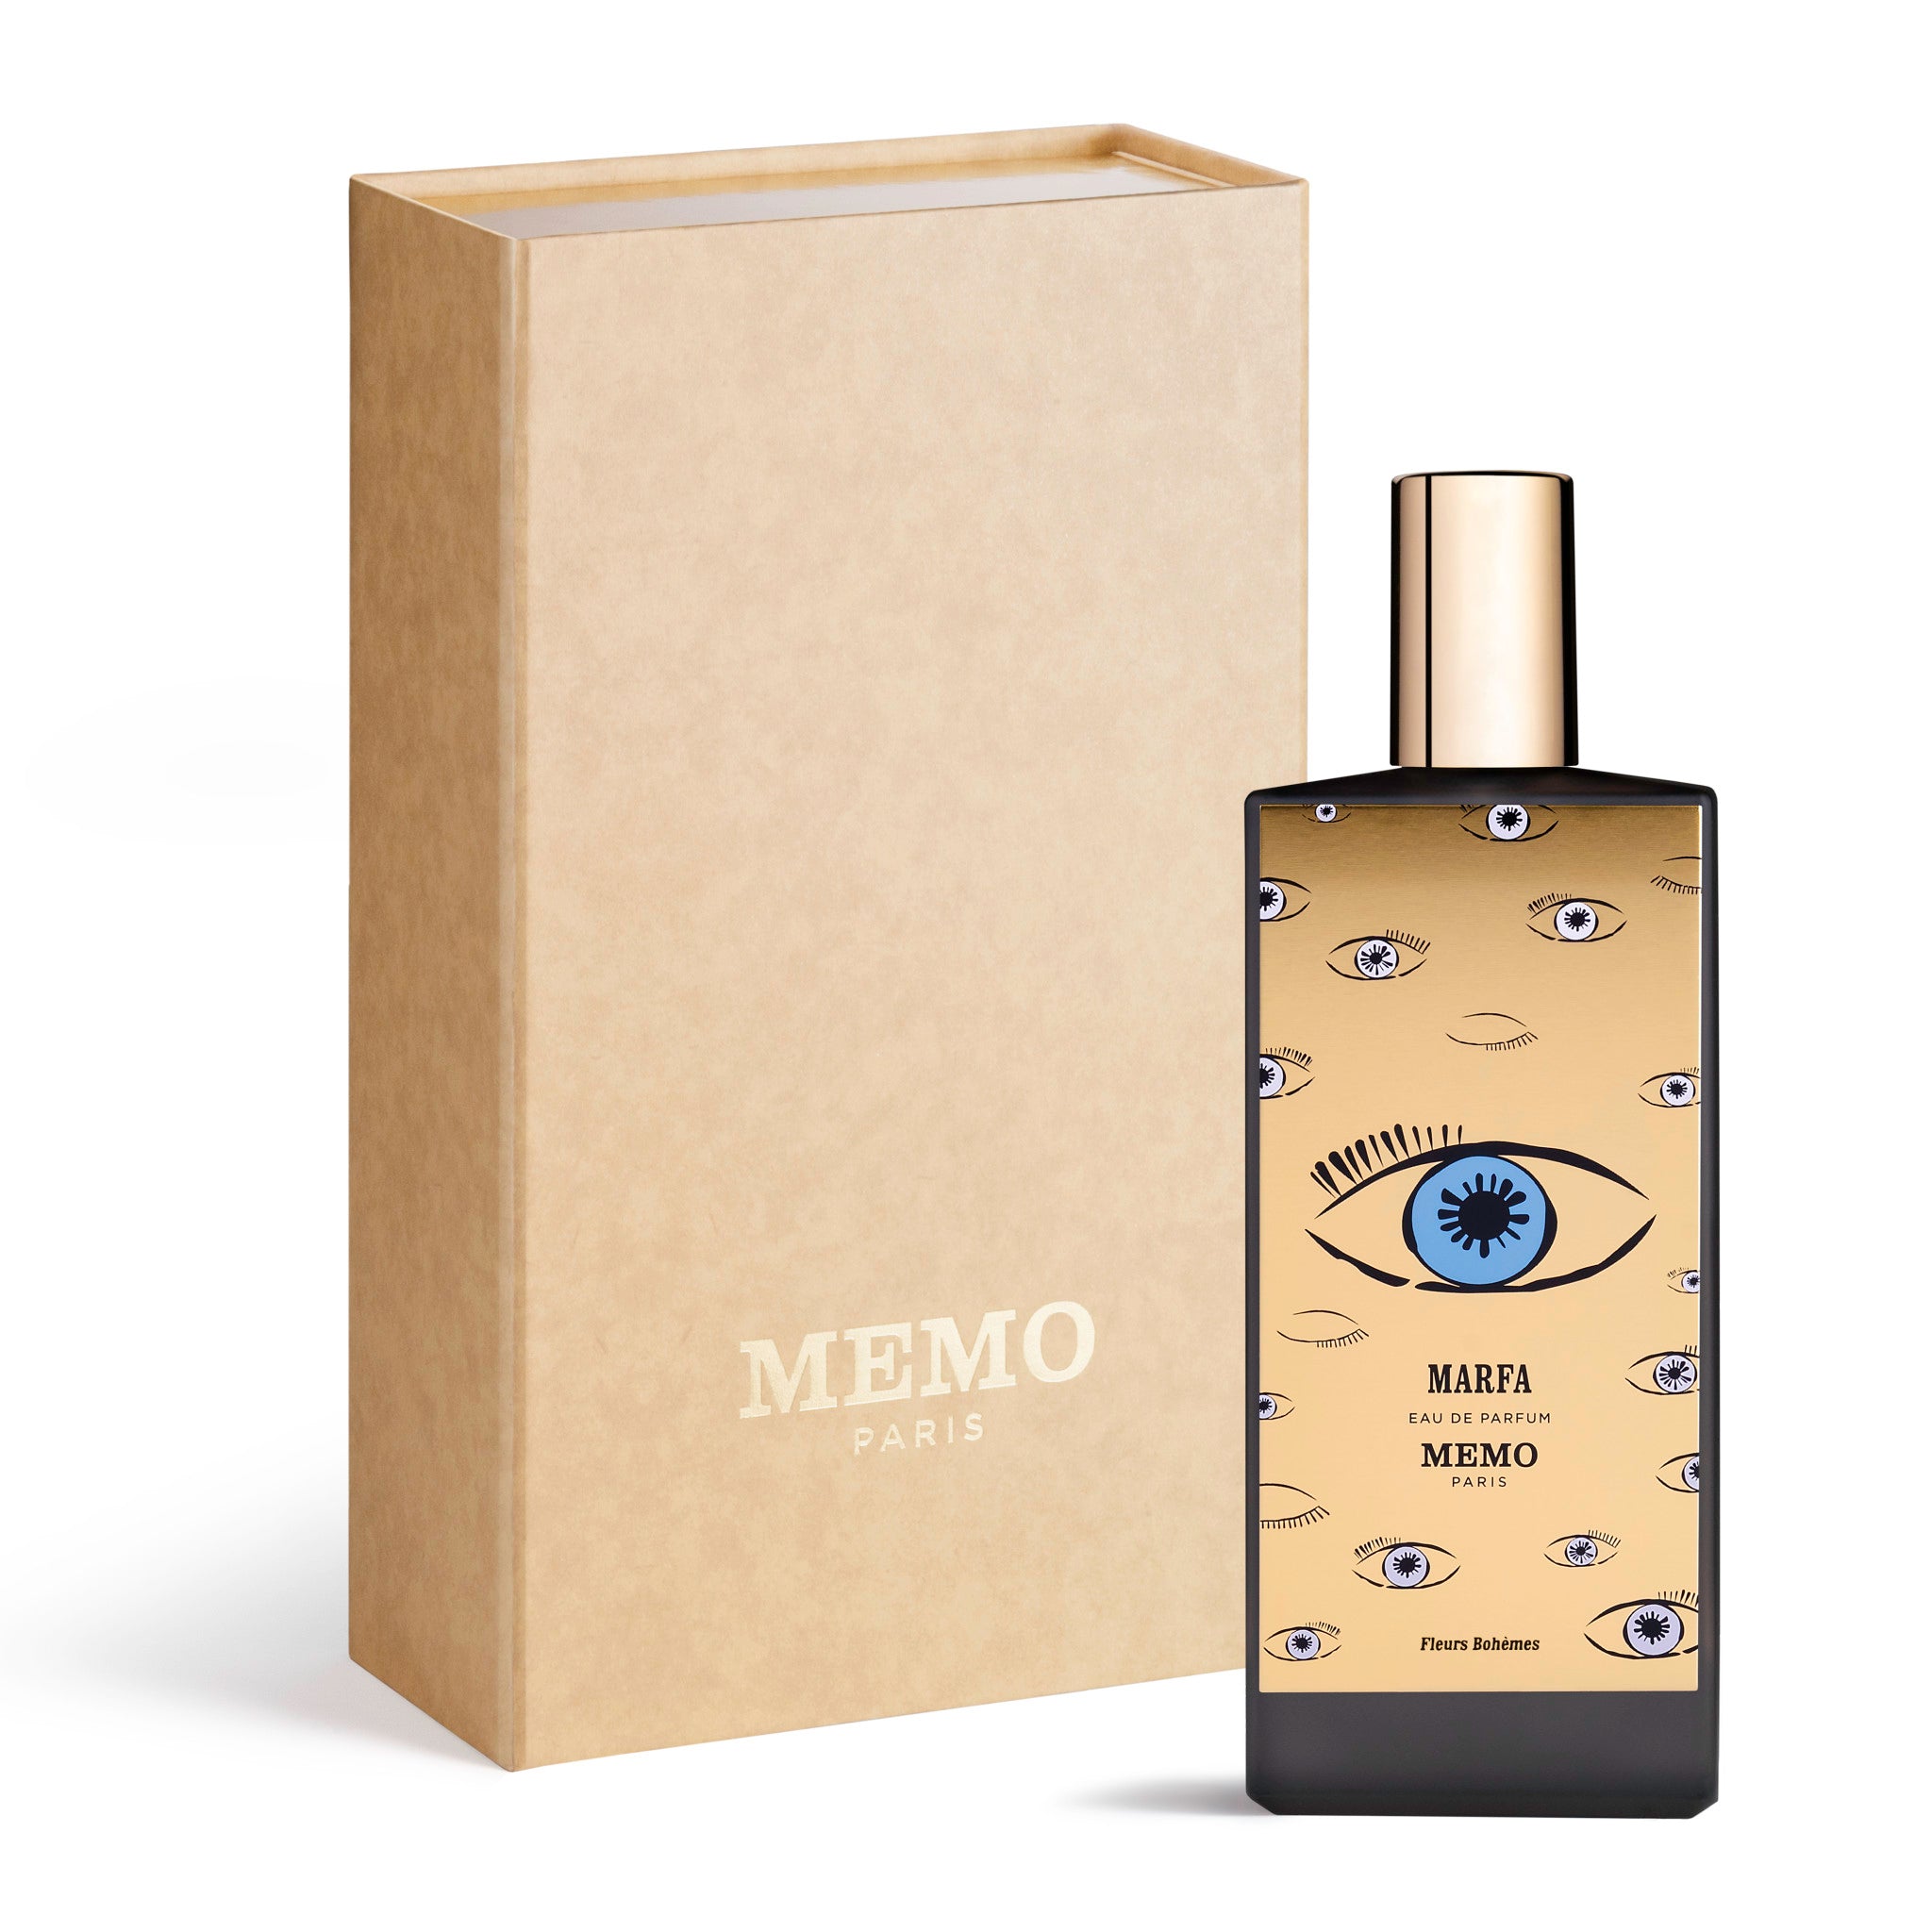 Limited edition Memo Paris Marfa Eau de Parfum (Limited Edition) Size variant: 3.54 fl oz | 76 ml main image.